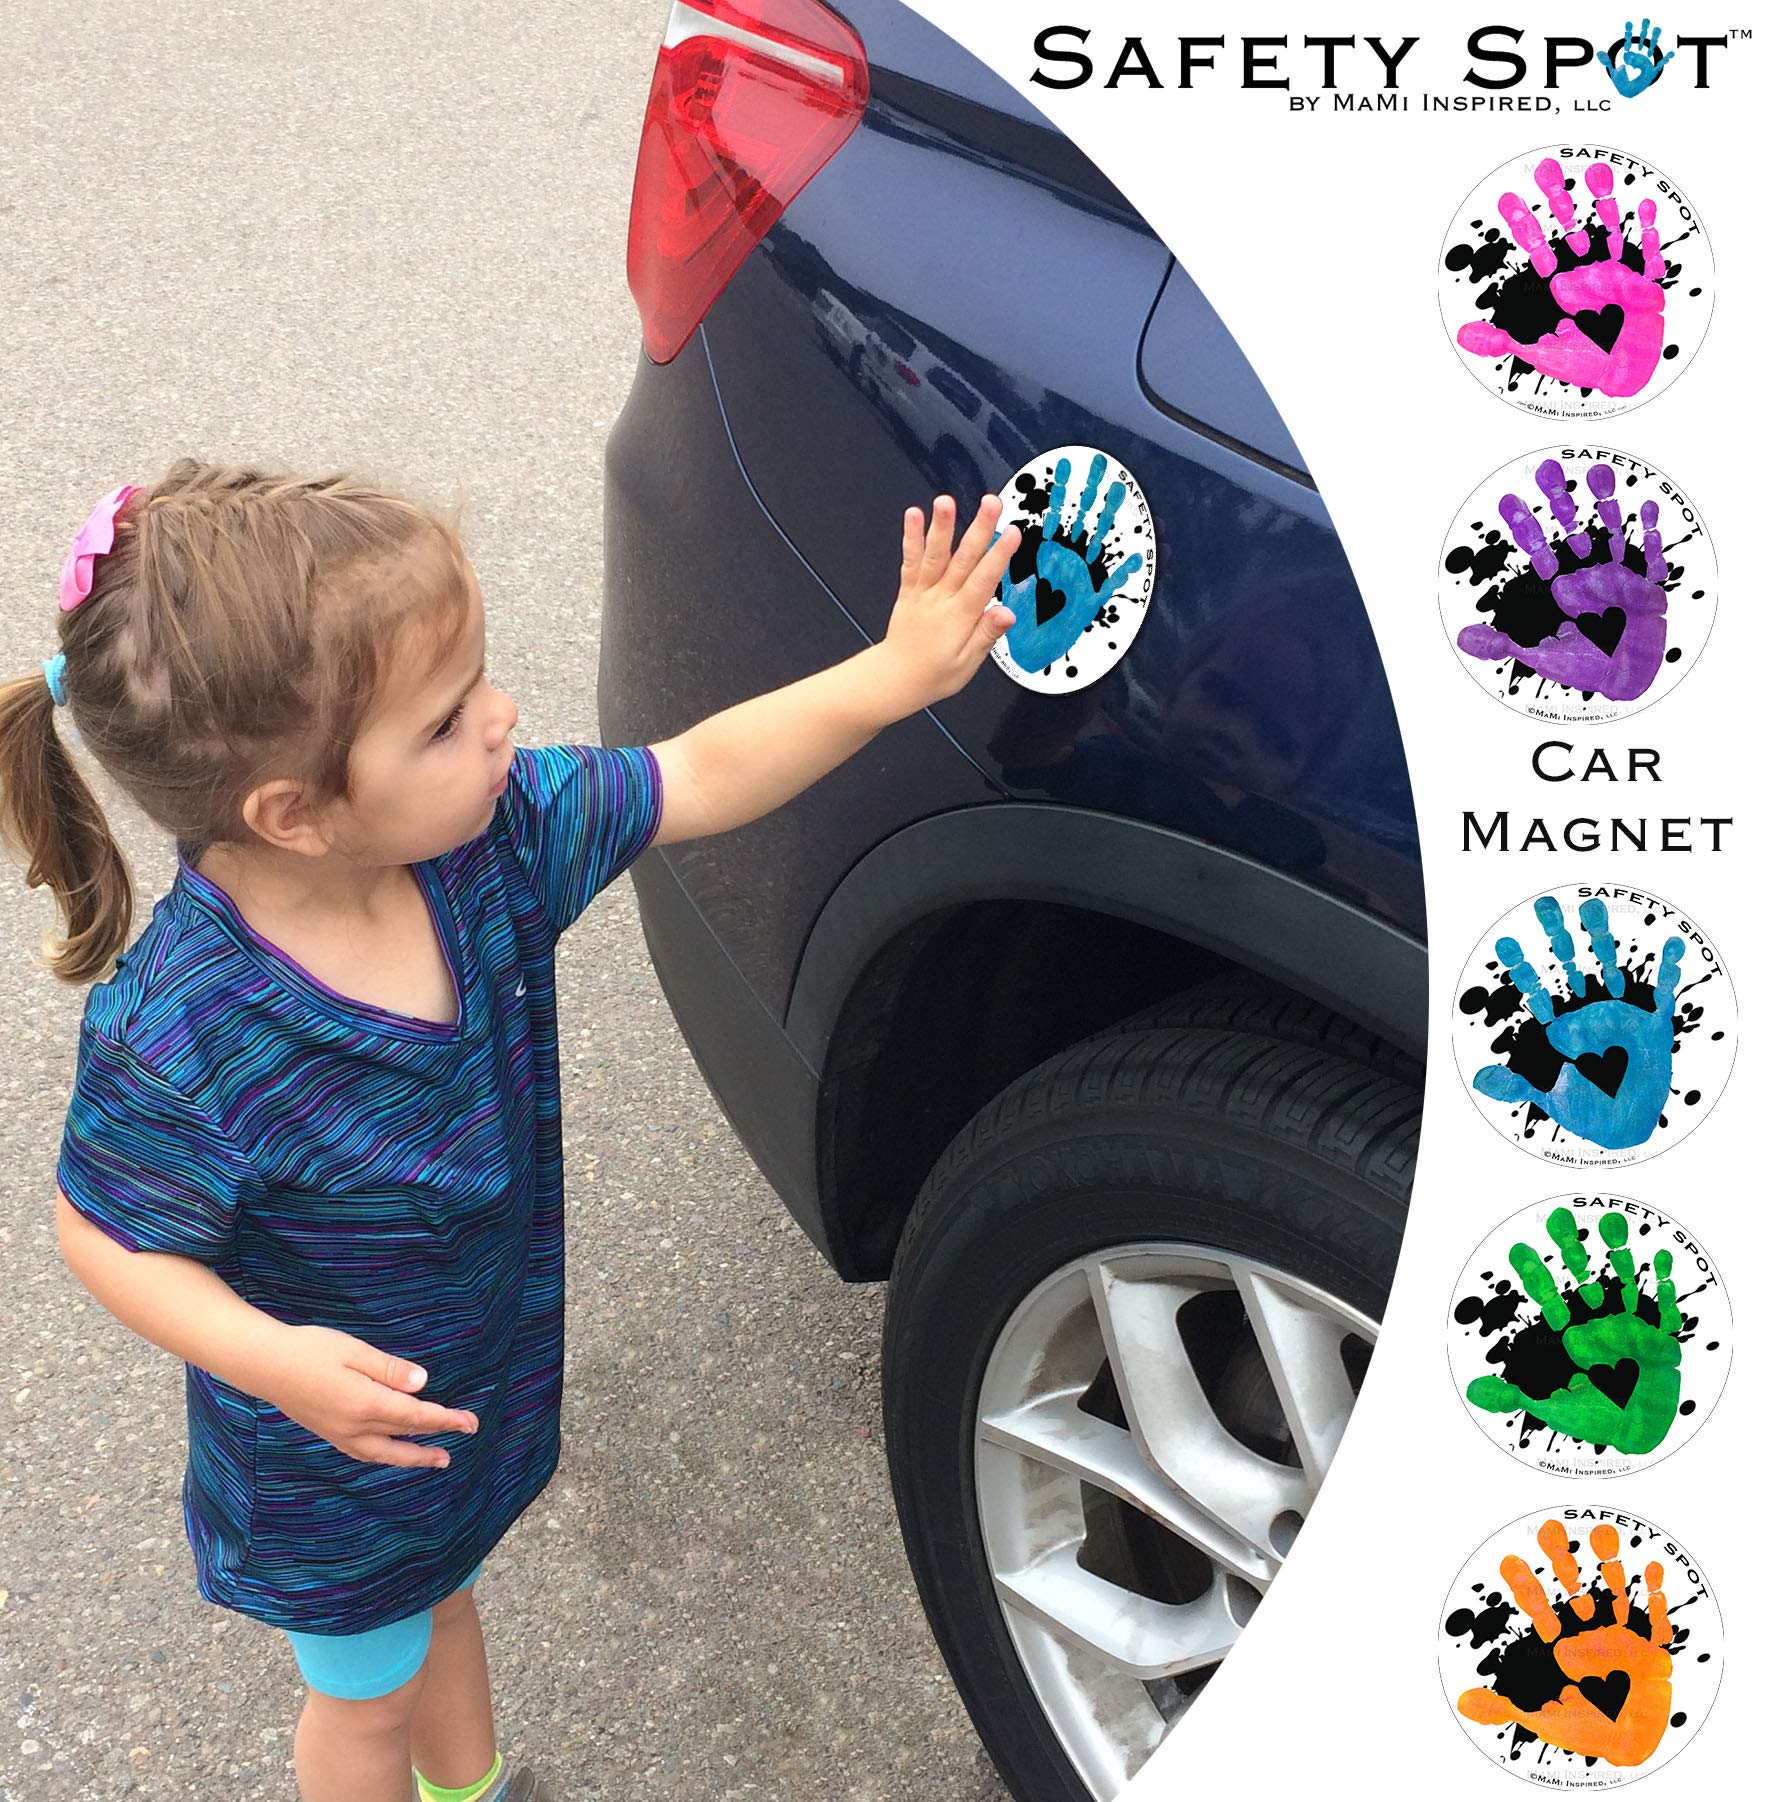 Safety Spot Magnet - Kids Handprint for Car Parking Lot Safety - White with Black Splat Background (Orange)